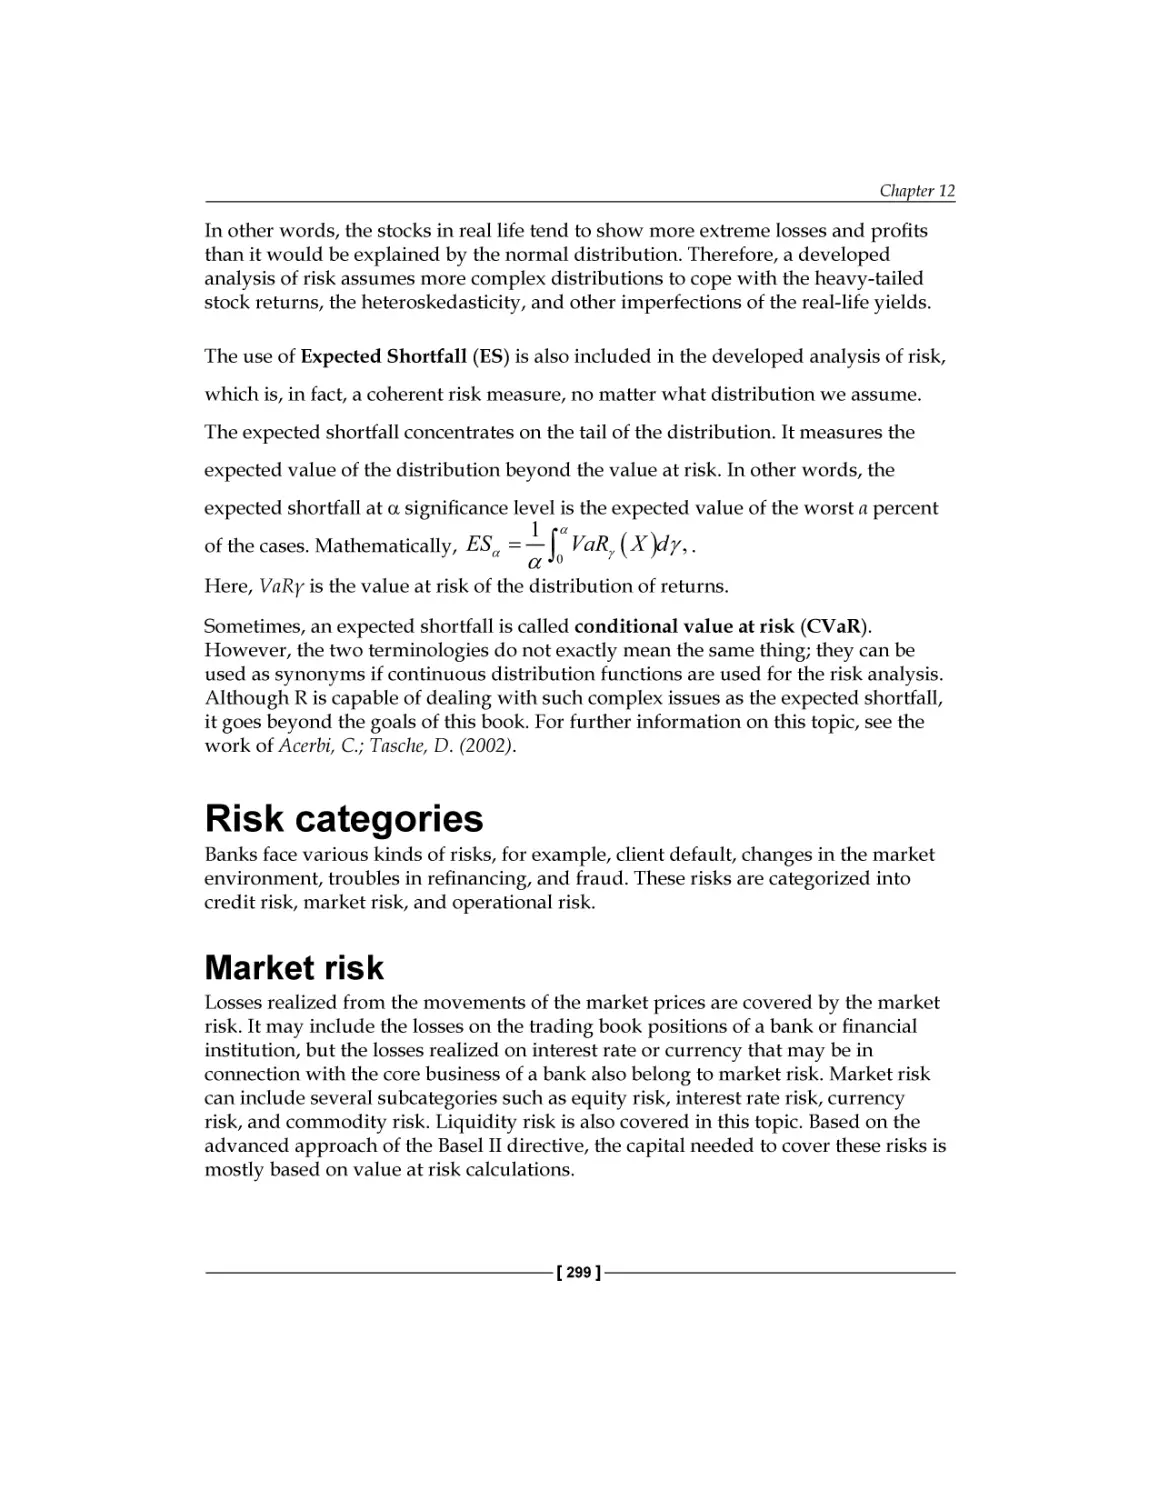 Risk categories
Market risk